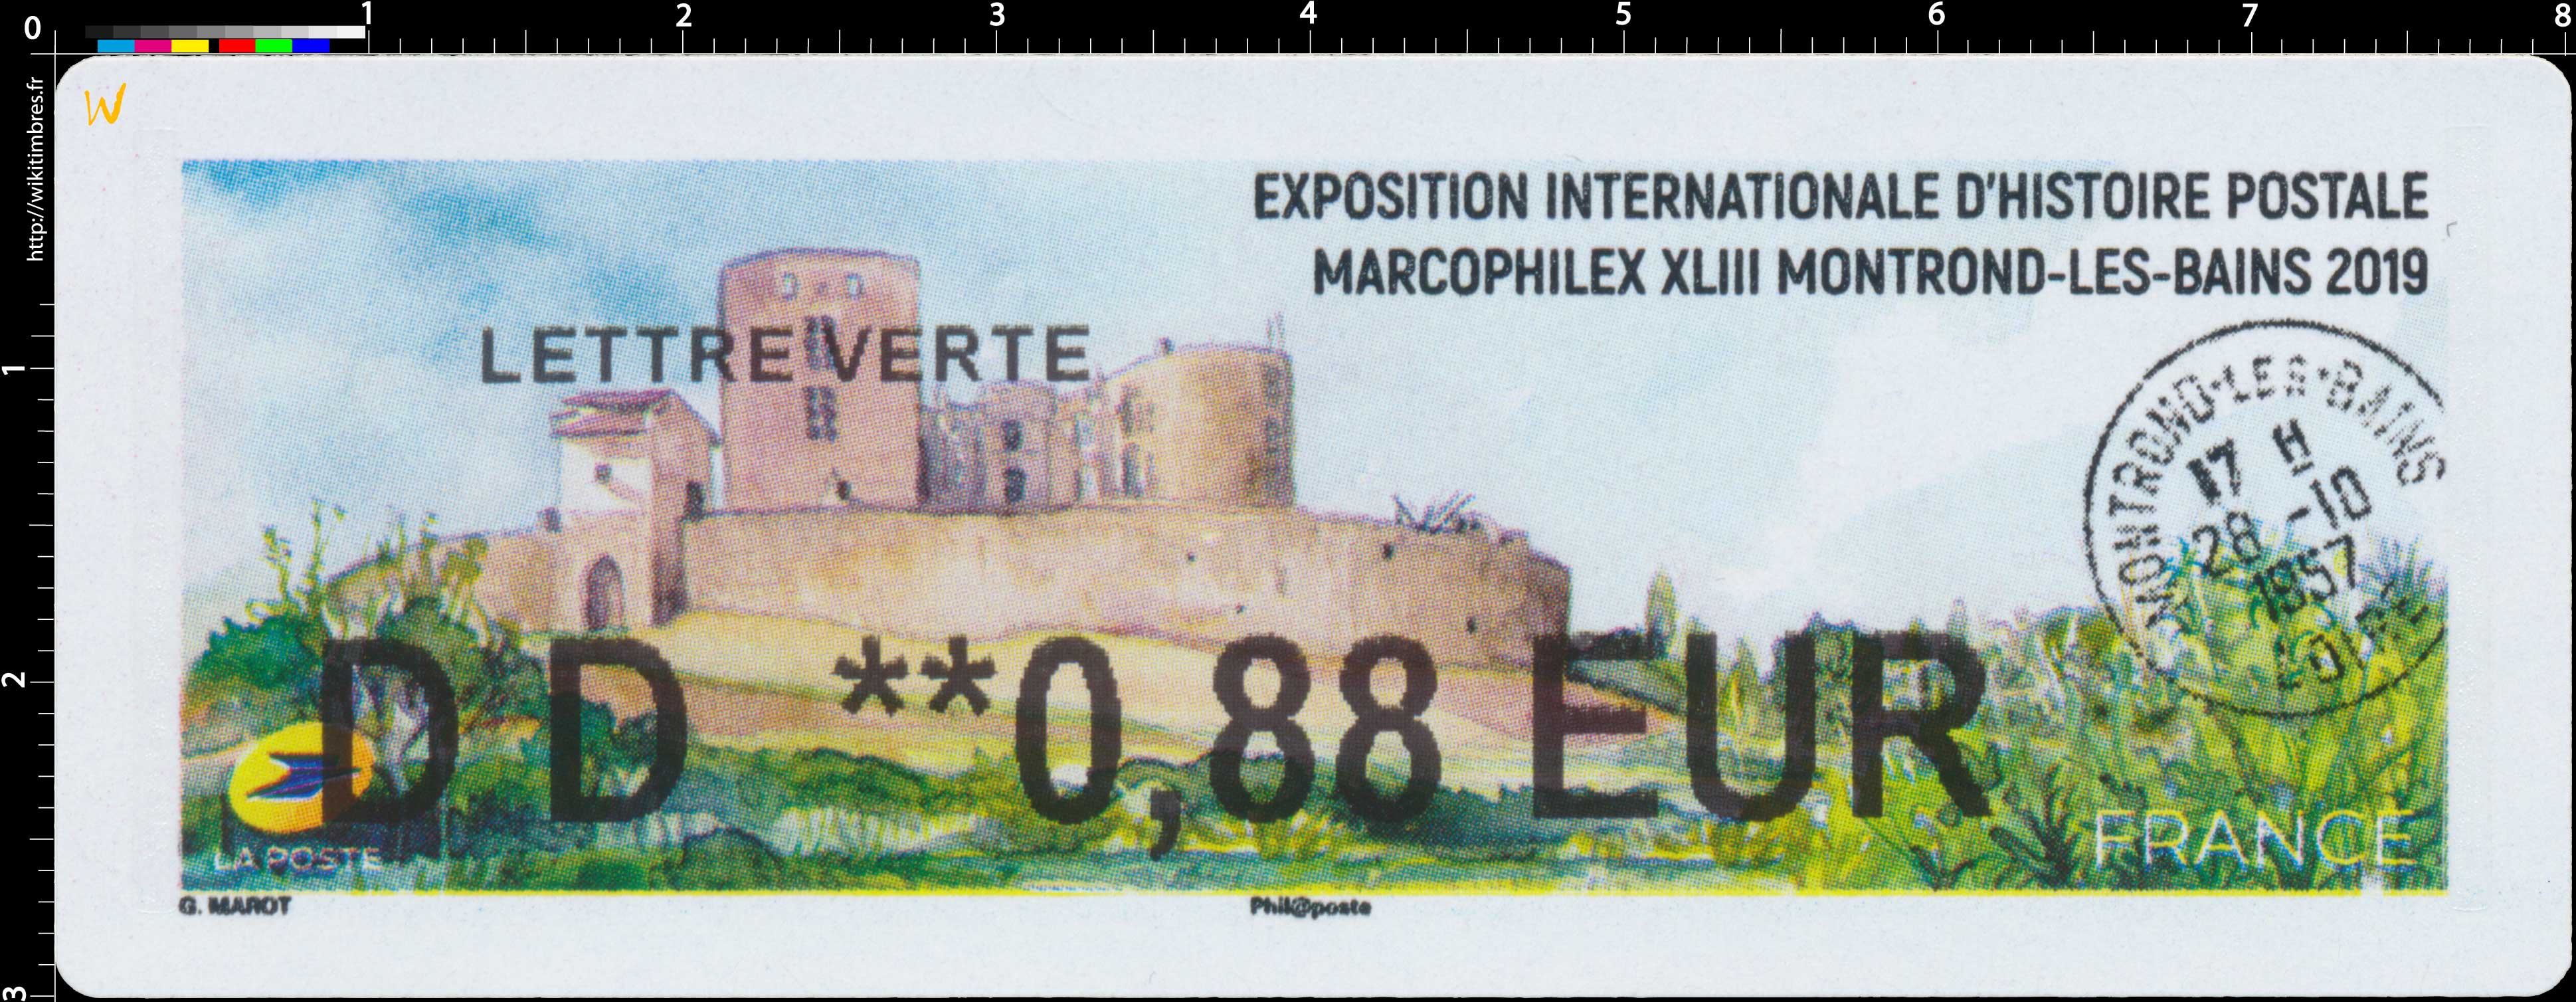 2019 Exposition internationale d'histoire postale Marcophilex XLIII Montrond-Les-Bains 2019